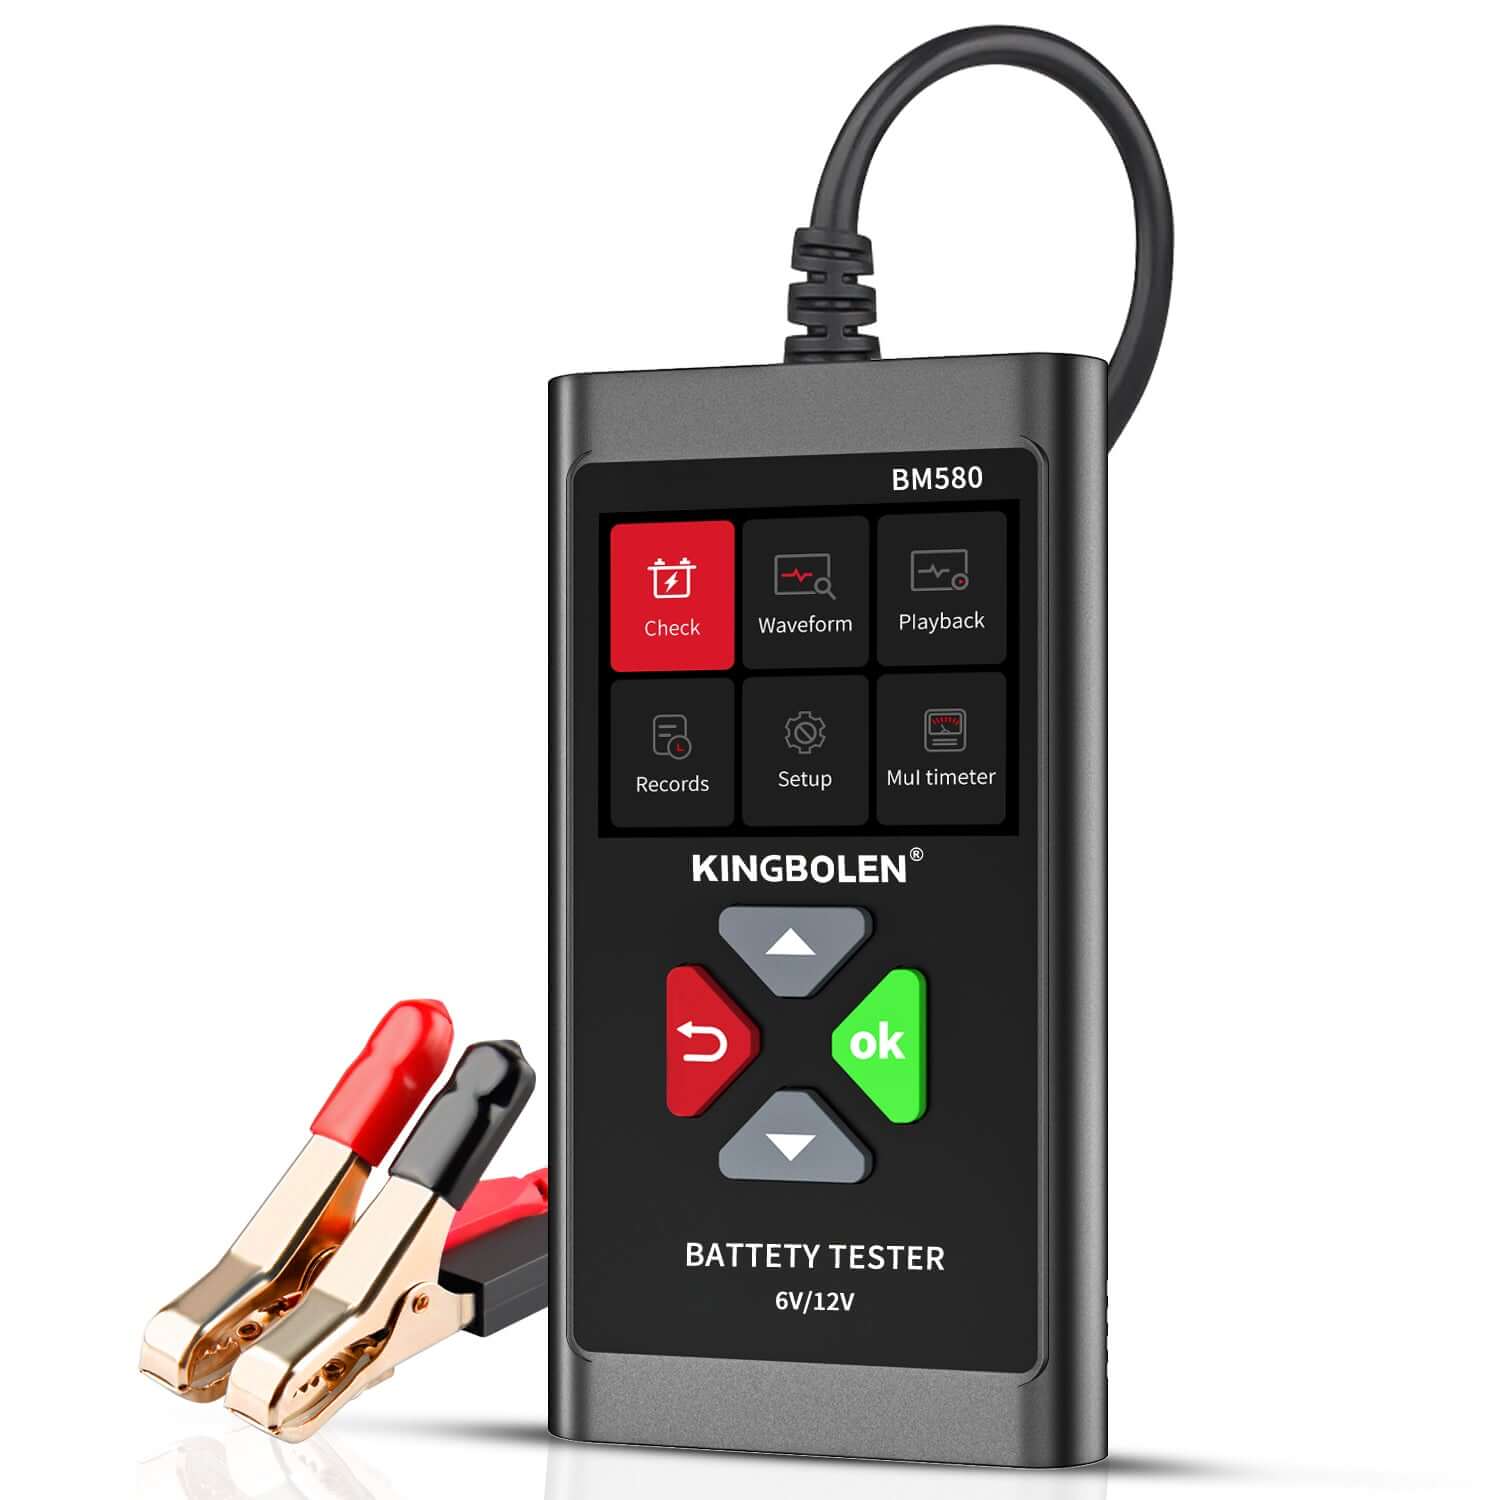 KINGBOLEN® BM580 Car Battery Tester for 6V and 12V Batteries